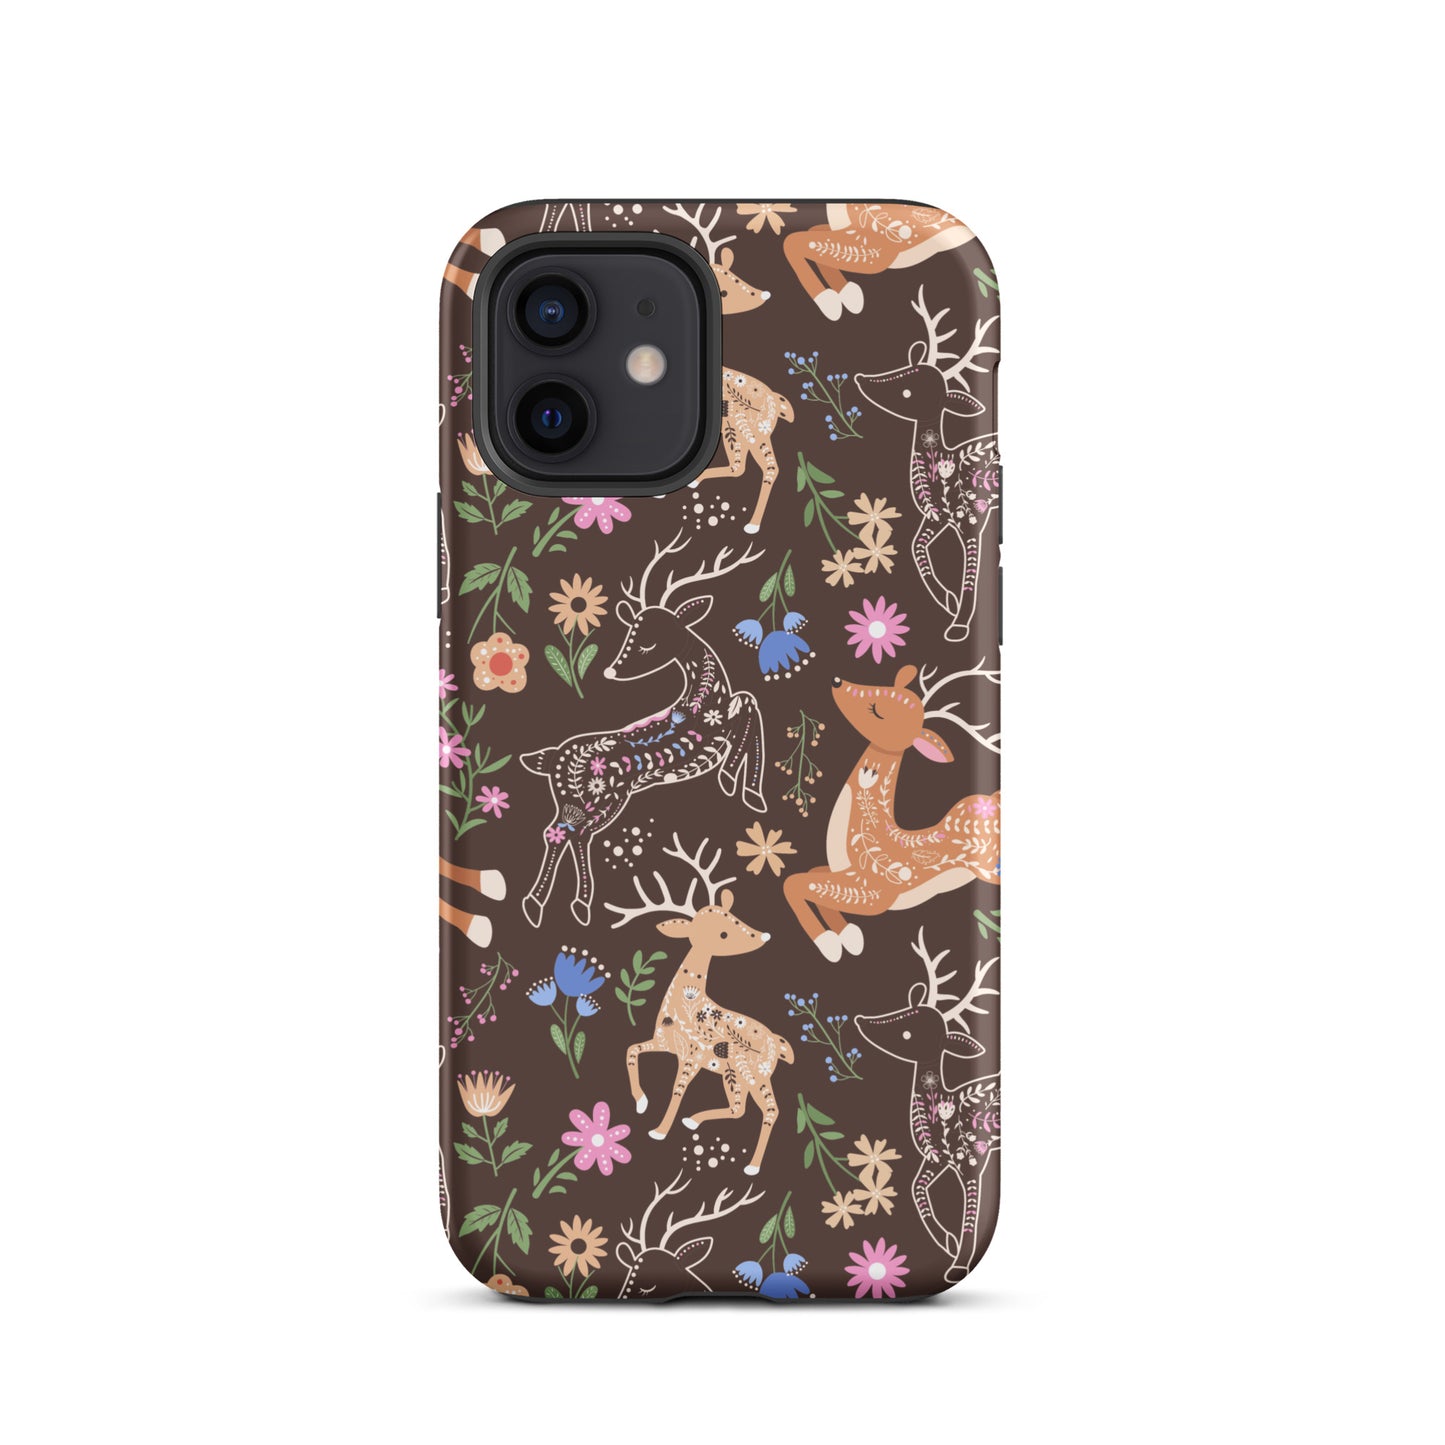 Deer Meadow iPhone Case iPhone 12 Matte